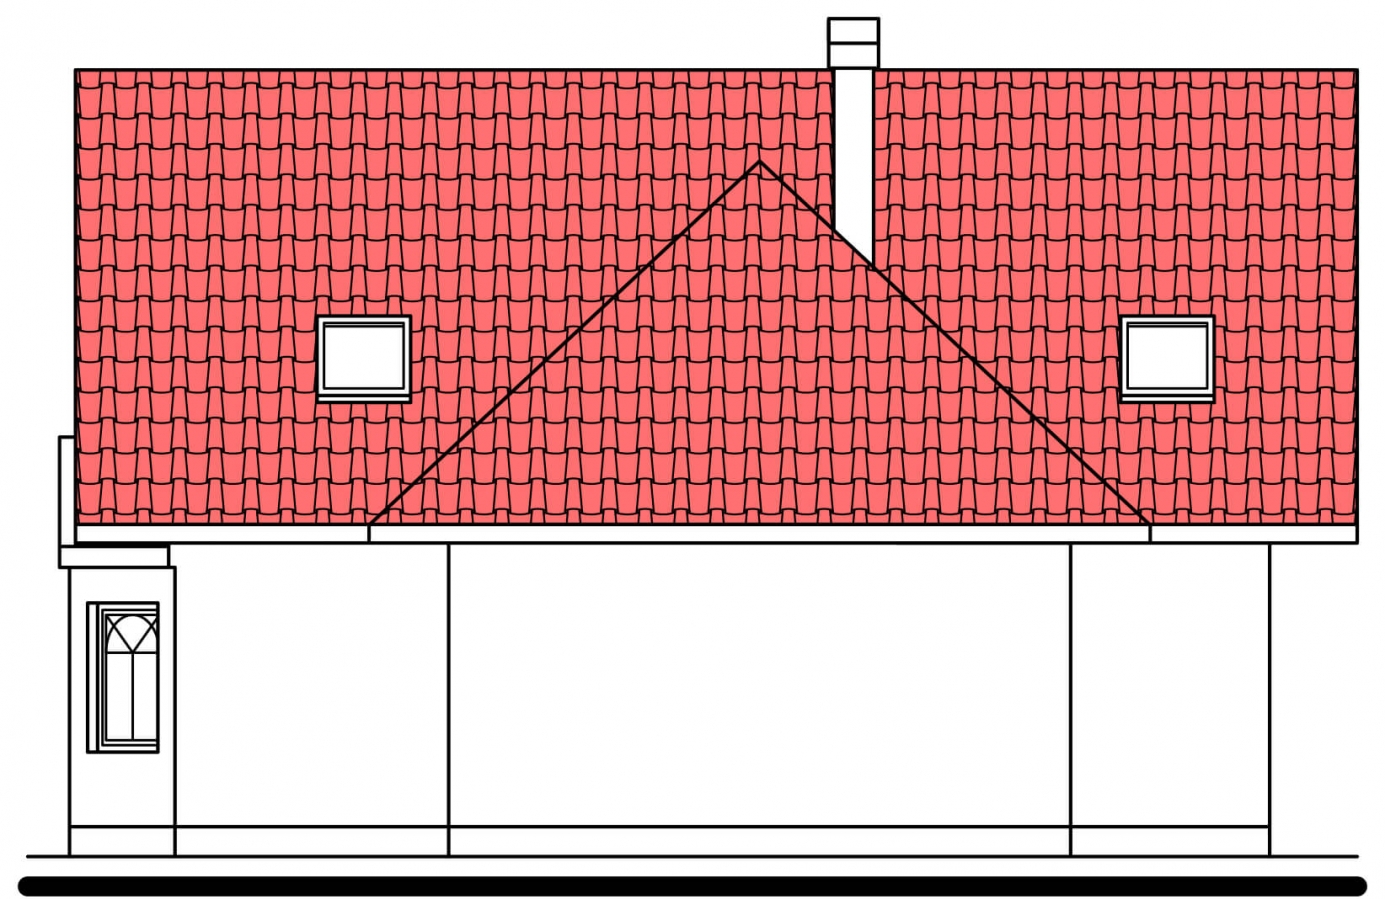 Pohľad 3. - Projekt domu na úzký pozemek. Možné postavit i bez garáže.